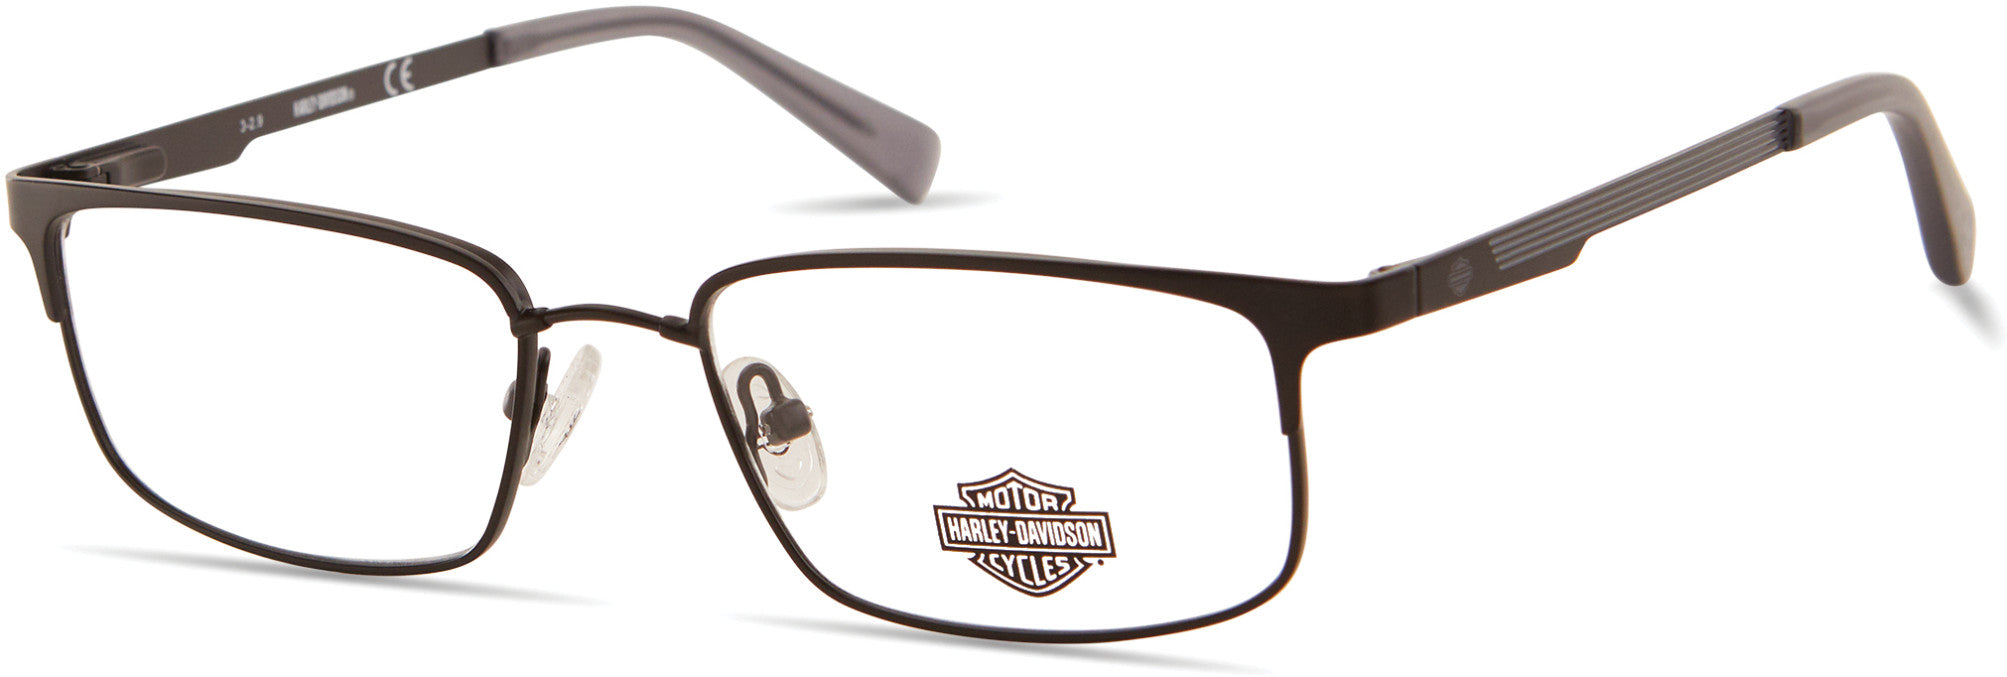 Harley-Davidson HD0142T Rectangular Eyeglasses 002-002 - Matte Black